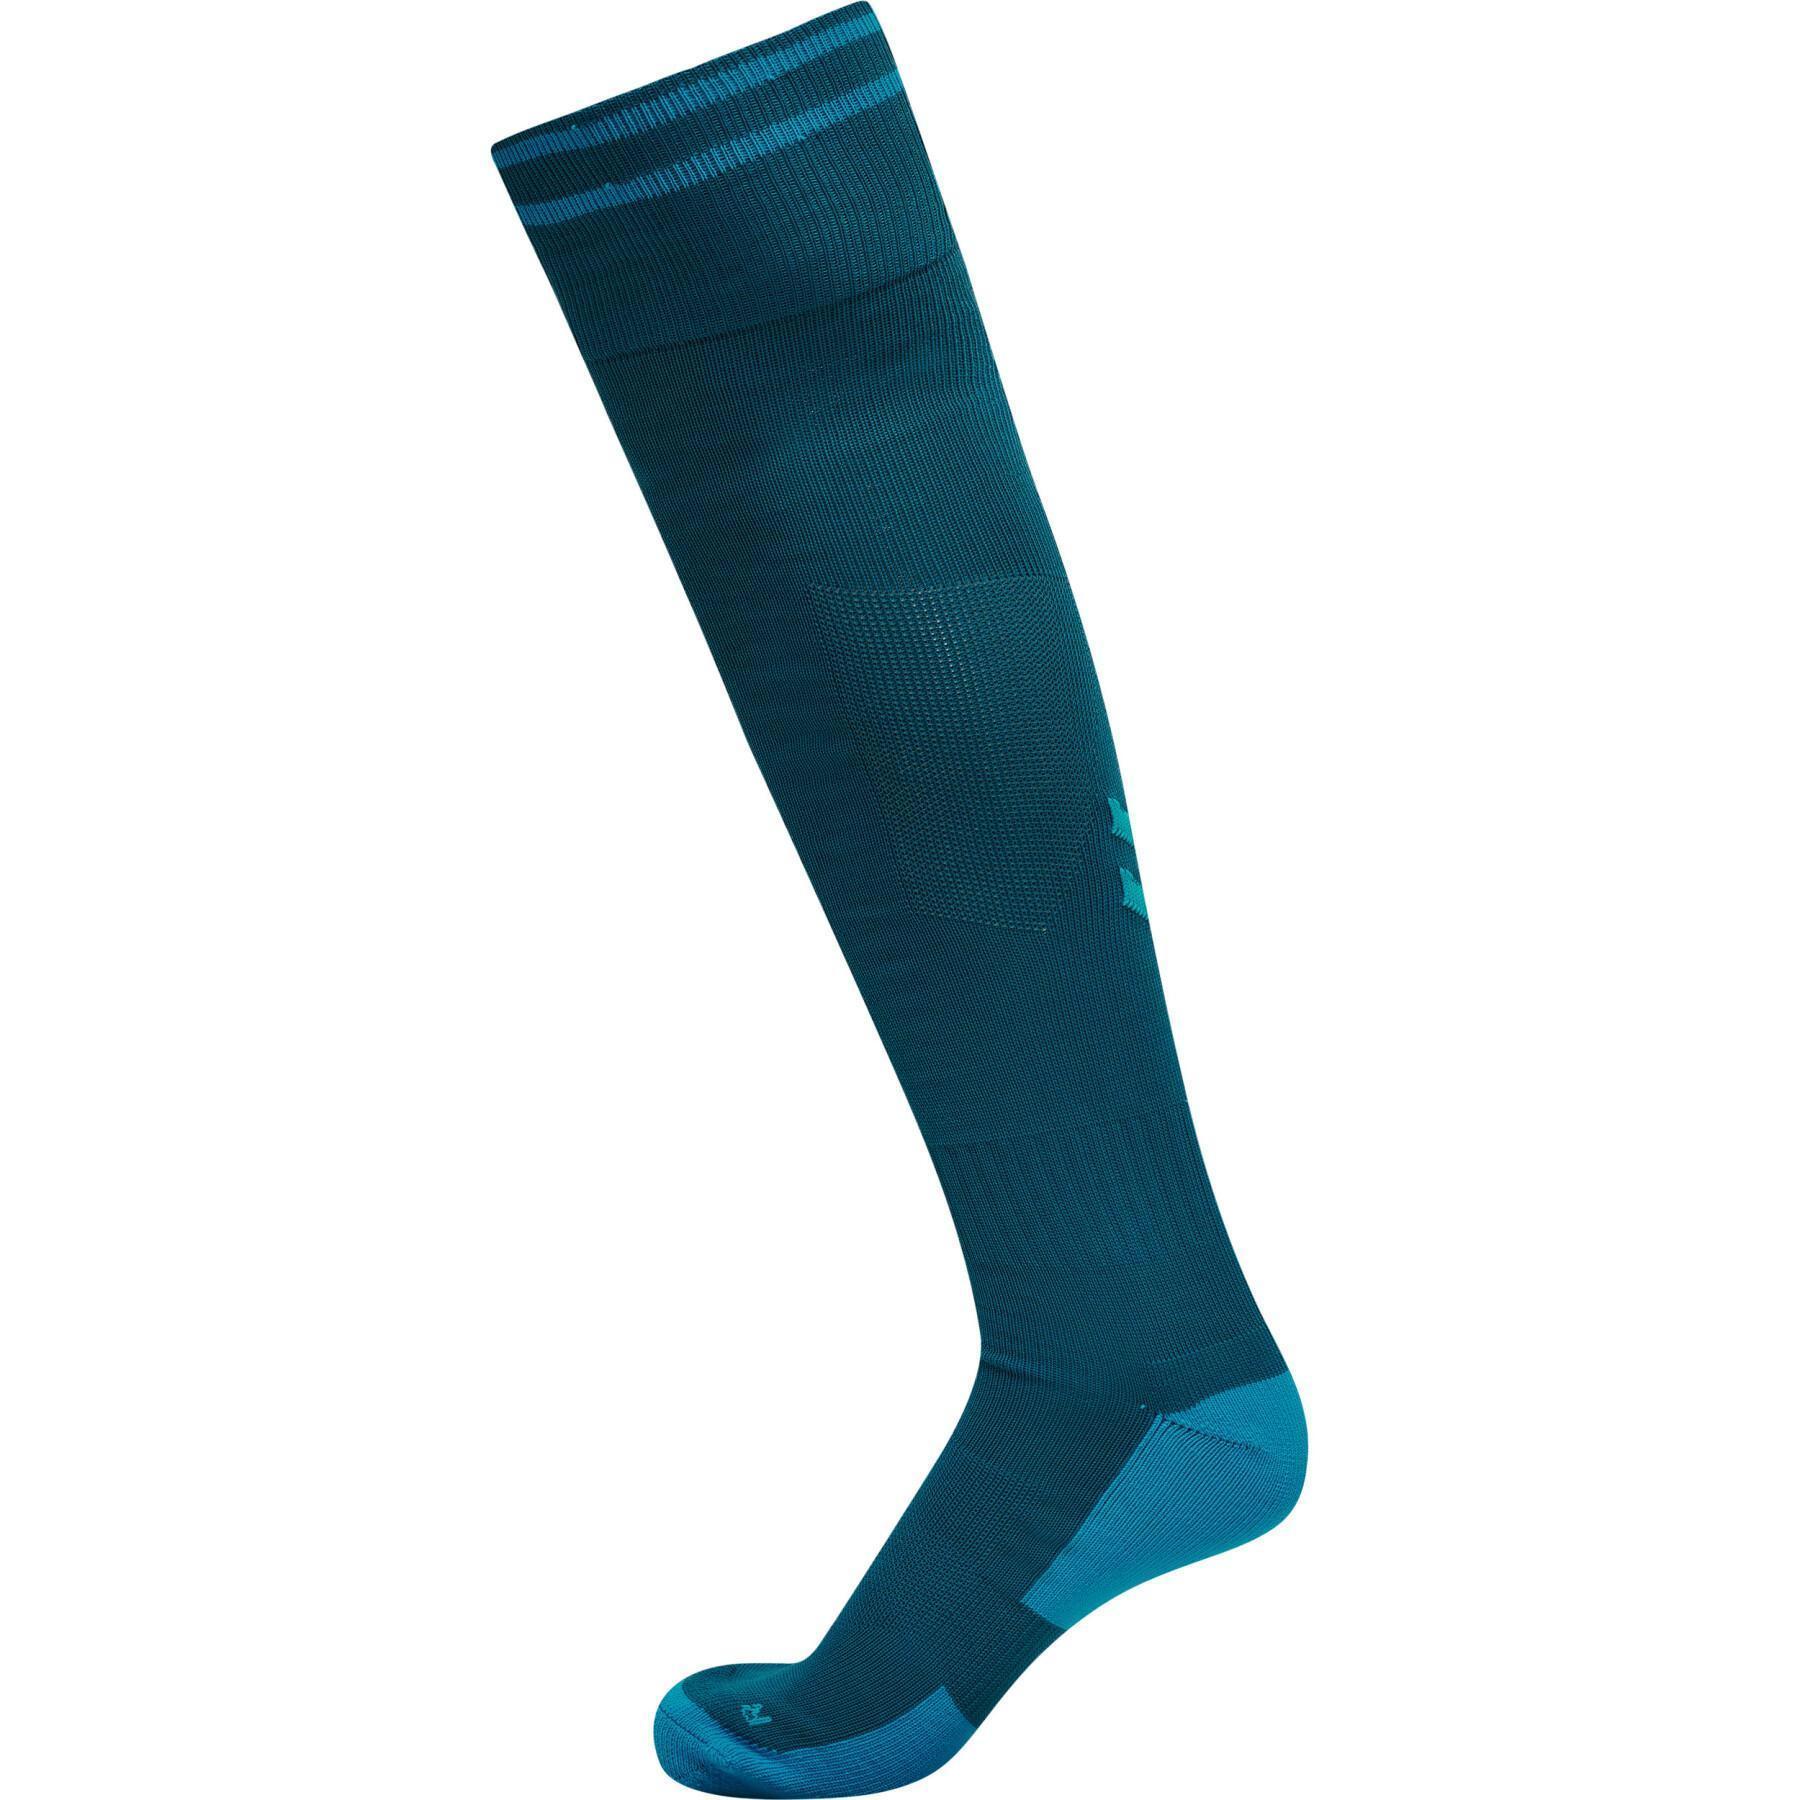 Children's soccer socks Hummel Element